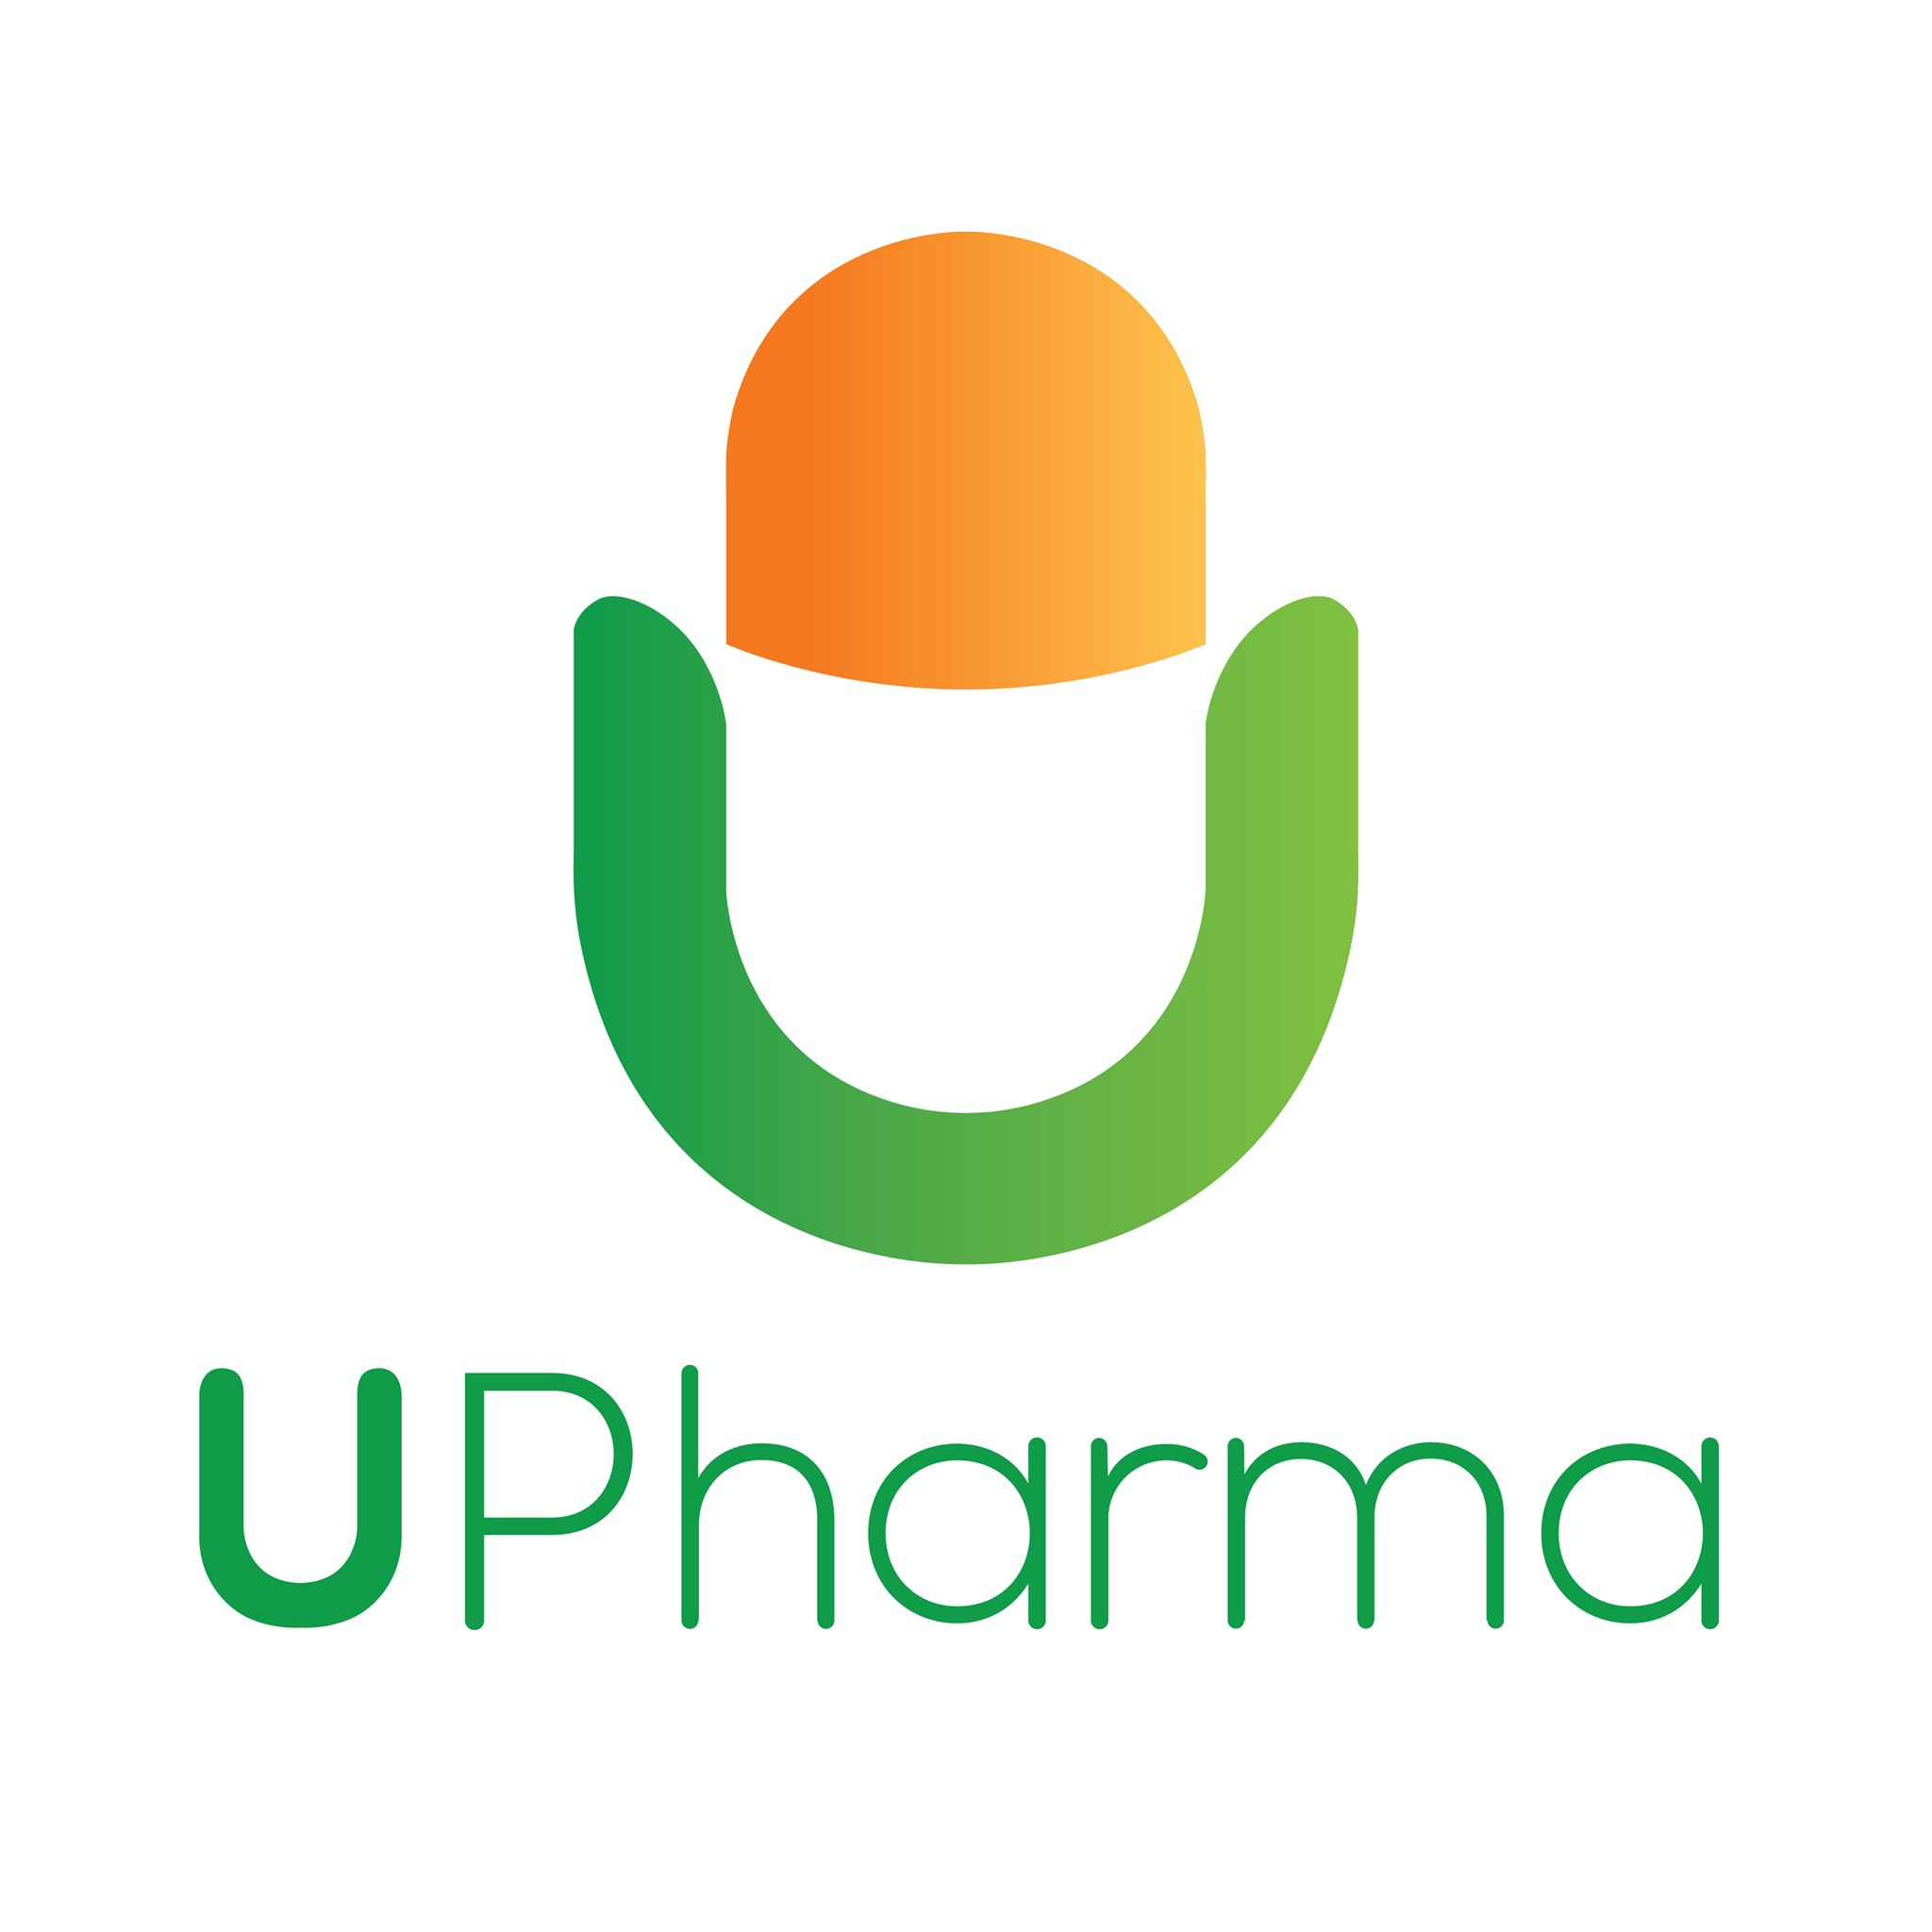 Logo Công ty Cổ phần Upharma